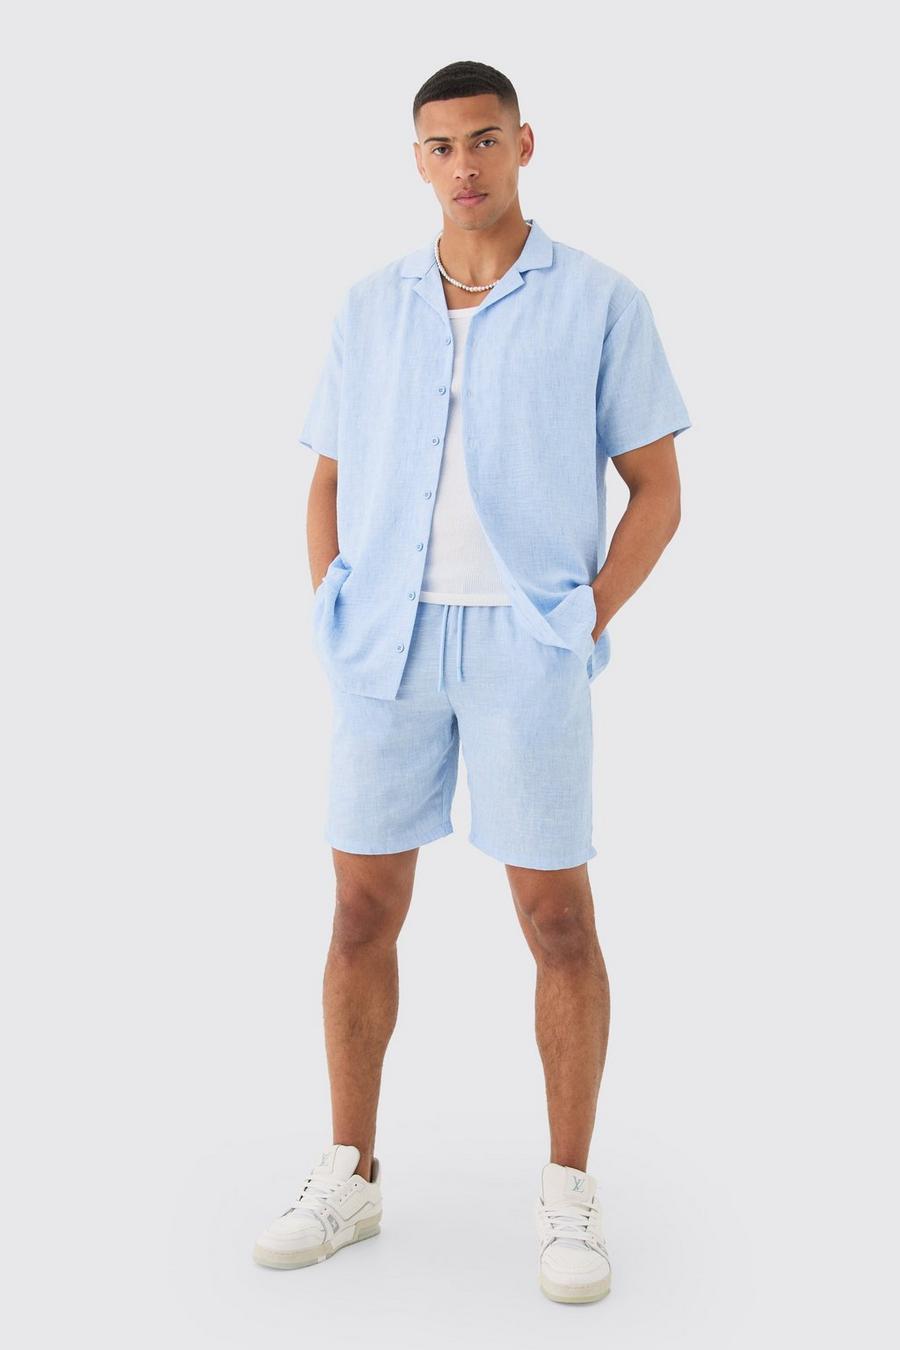 Ensemble oversize en lin avec chemise et short, Pale blue